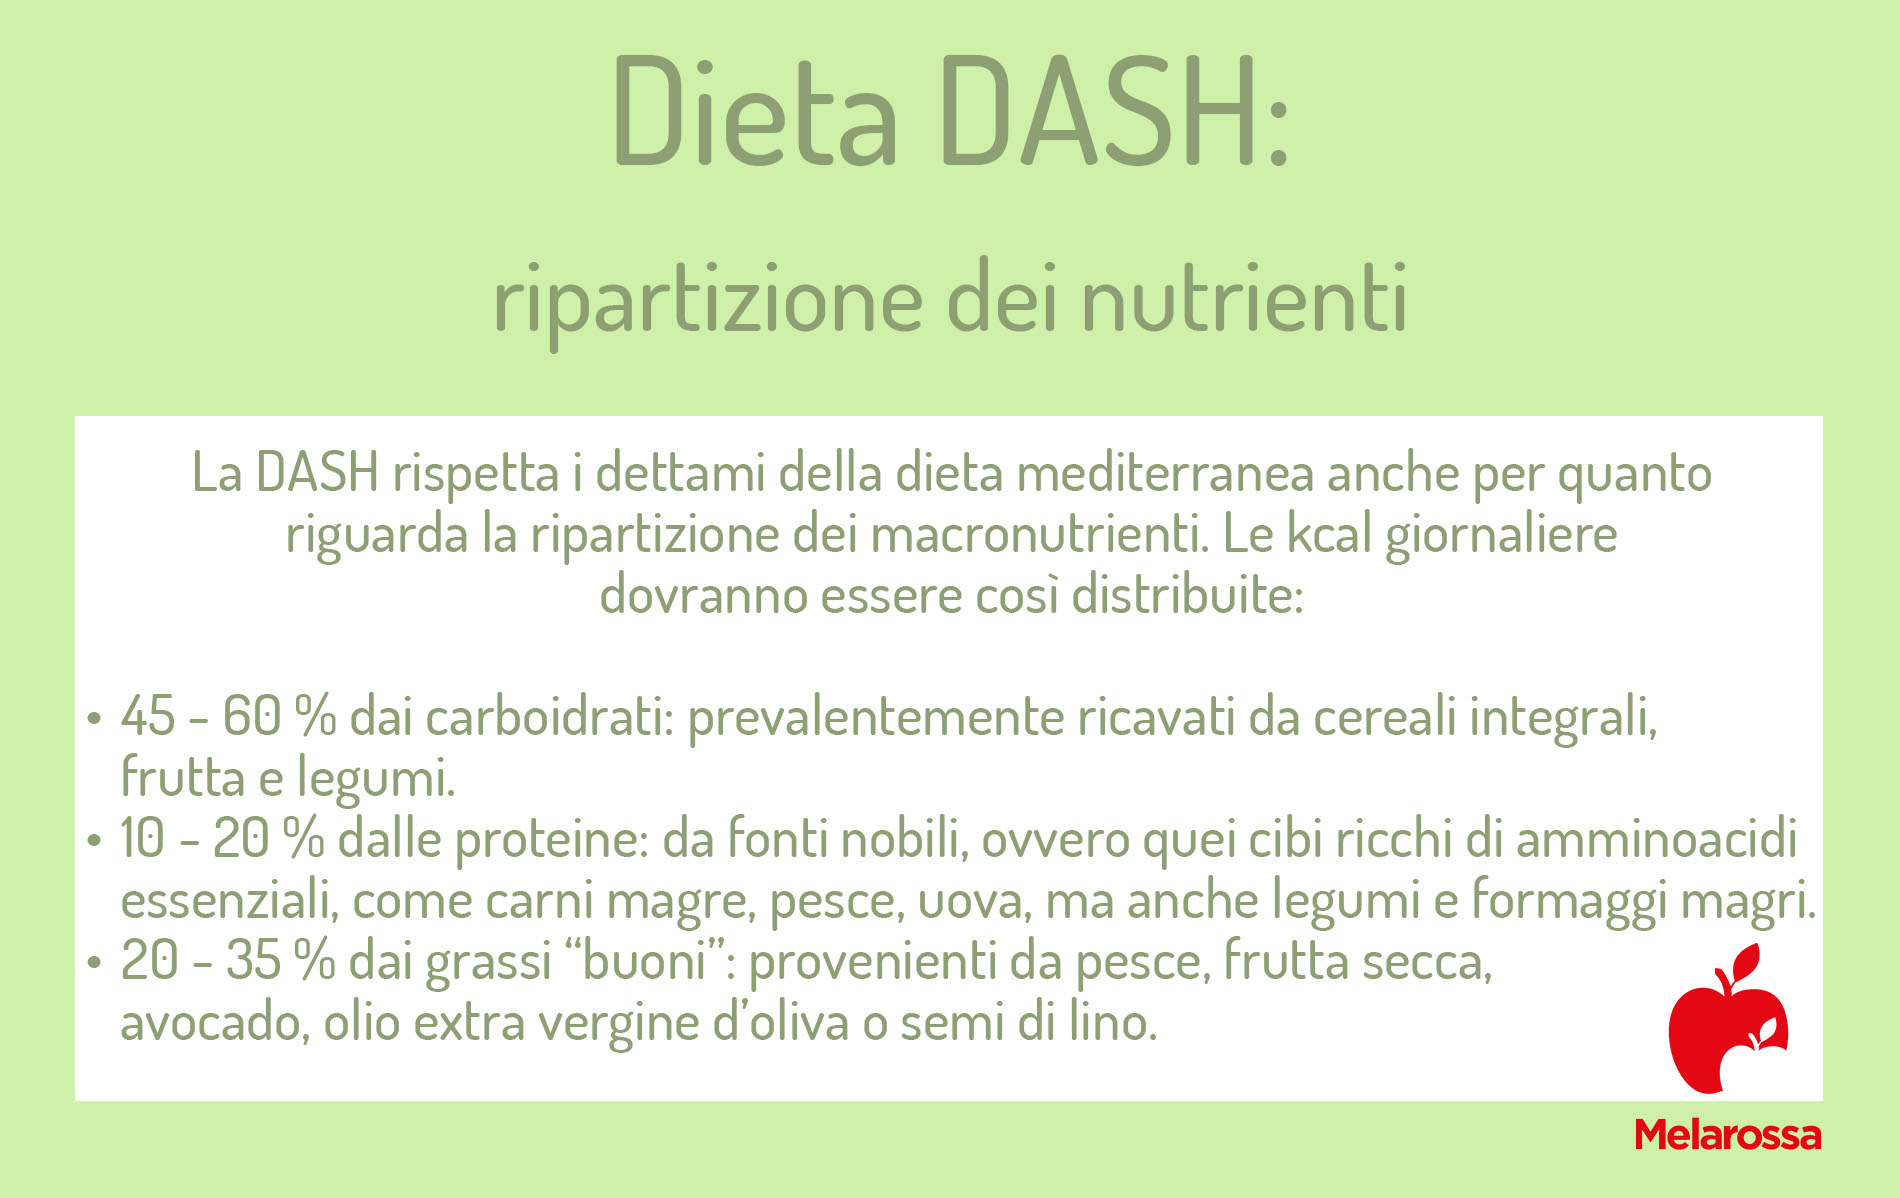 dieta Dash: che cos'è?